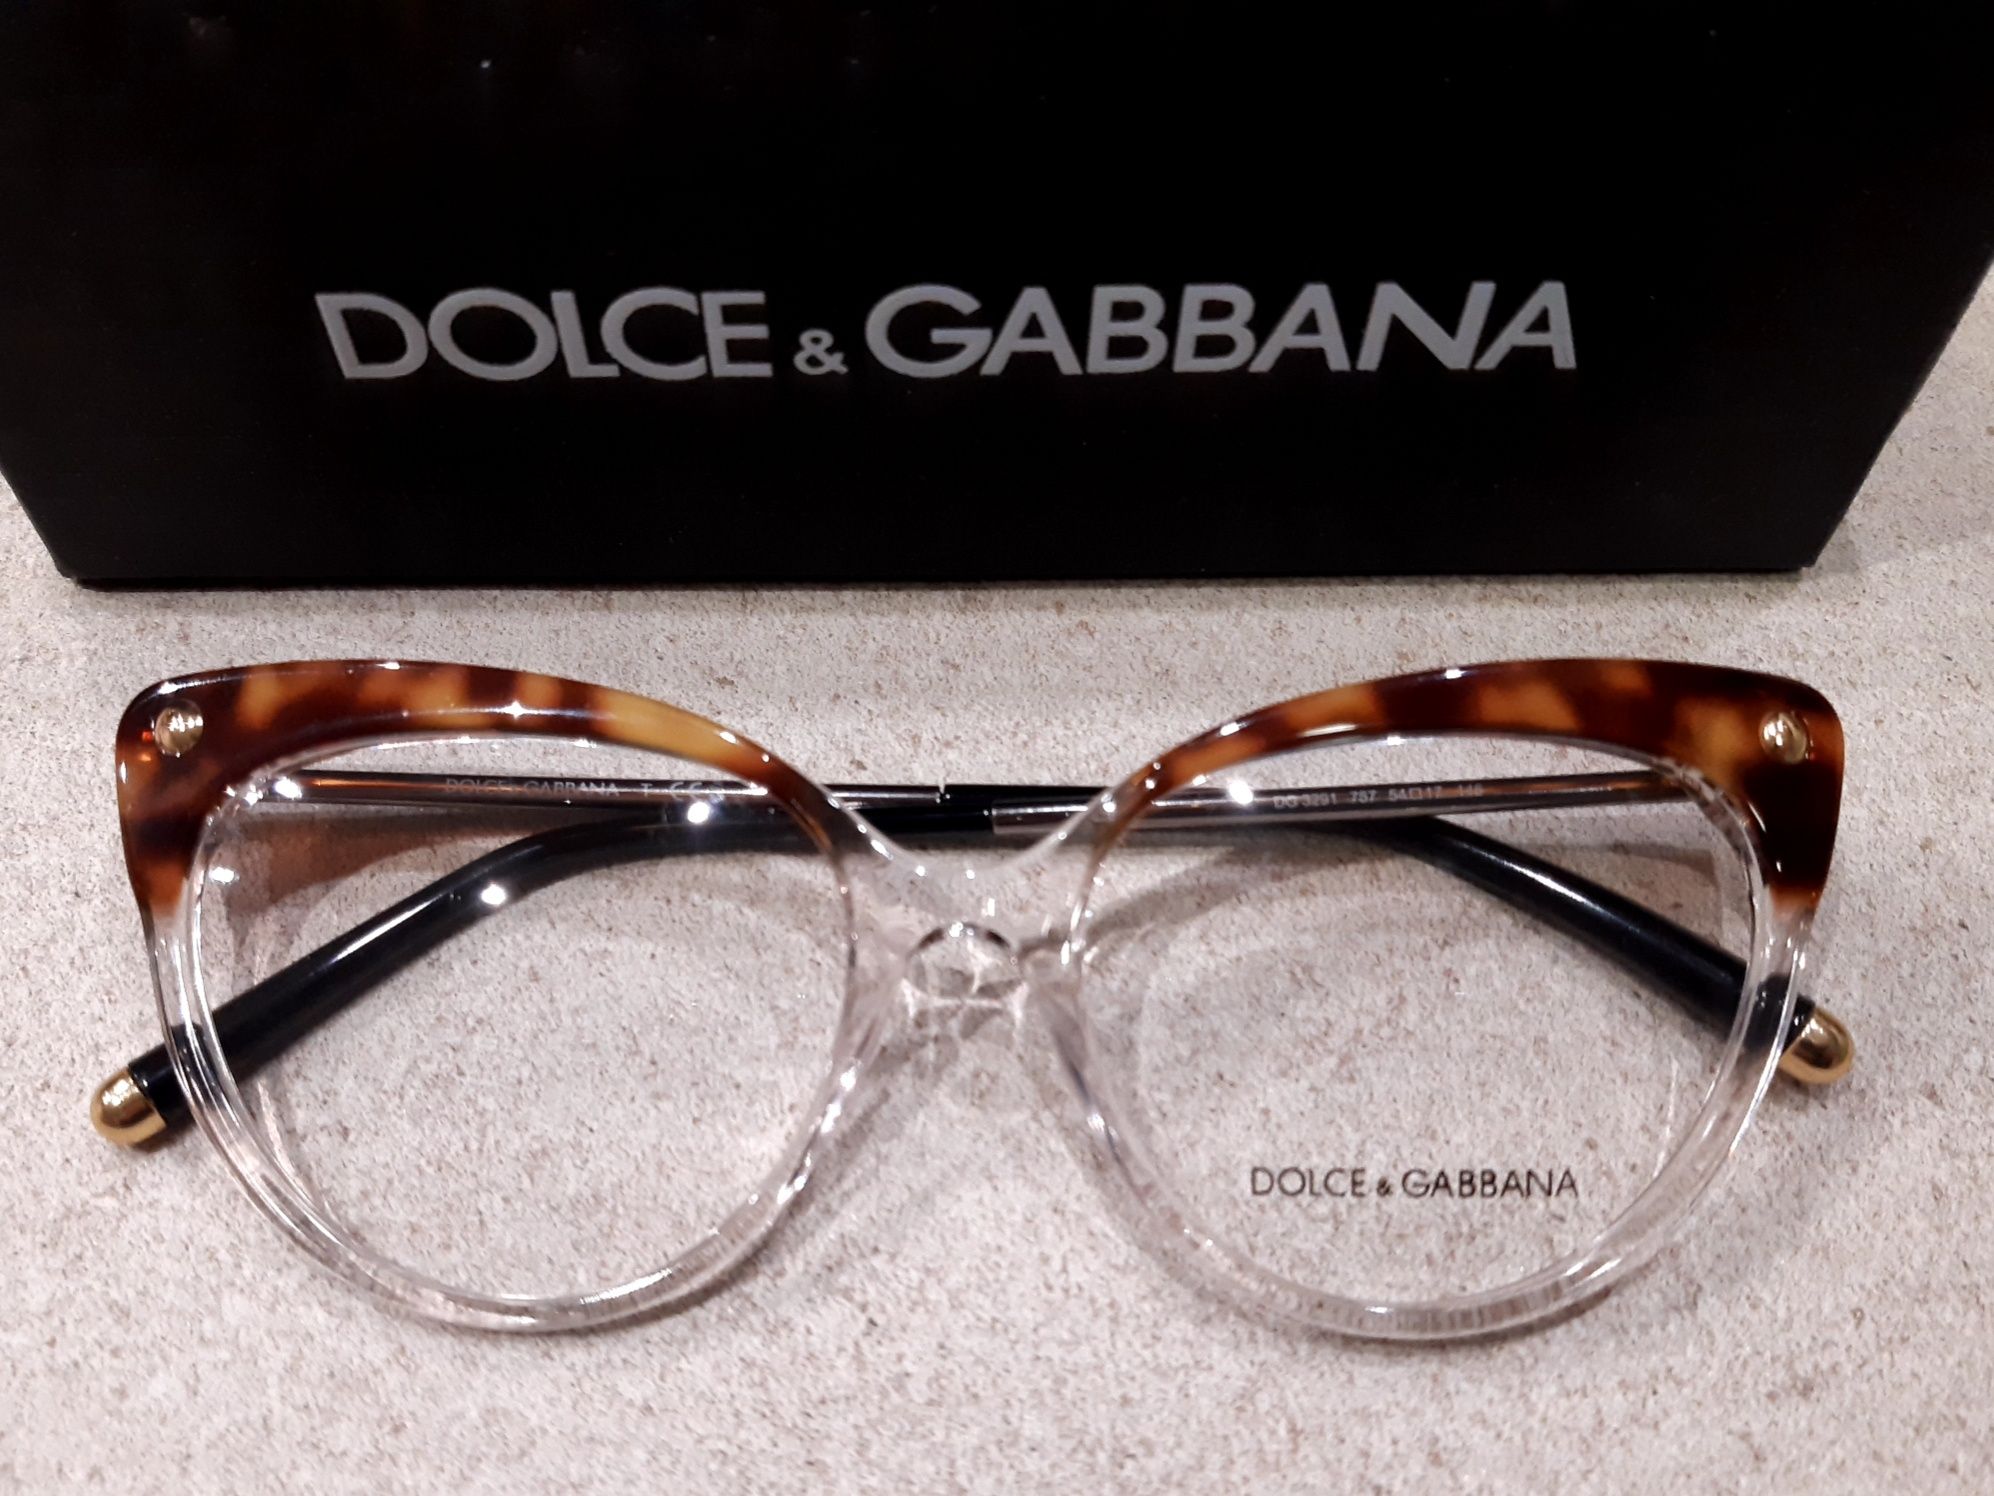 Женские оправы кошачий глаз  DG 3291 757 от Dolce&Gabbana!  Оригинал!